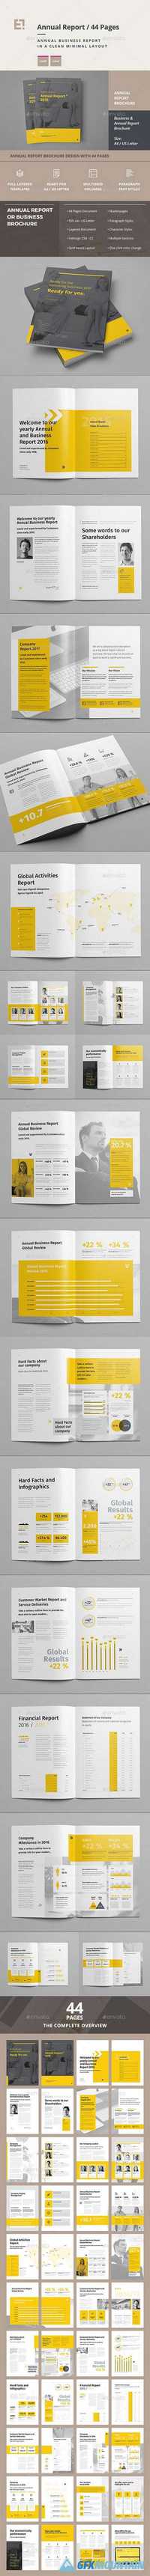 GraphicRiver - Annual Report - 17450994